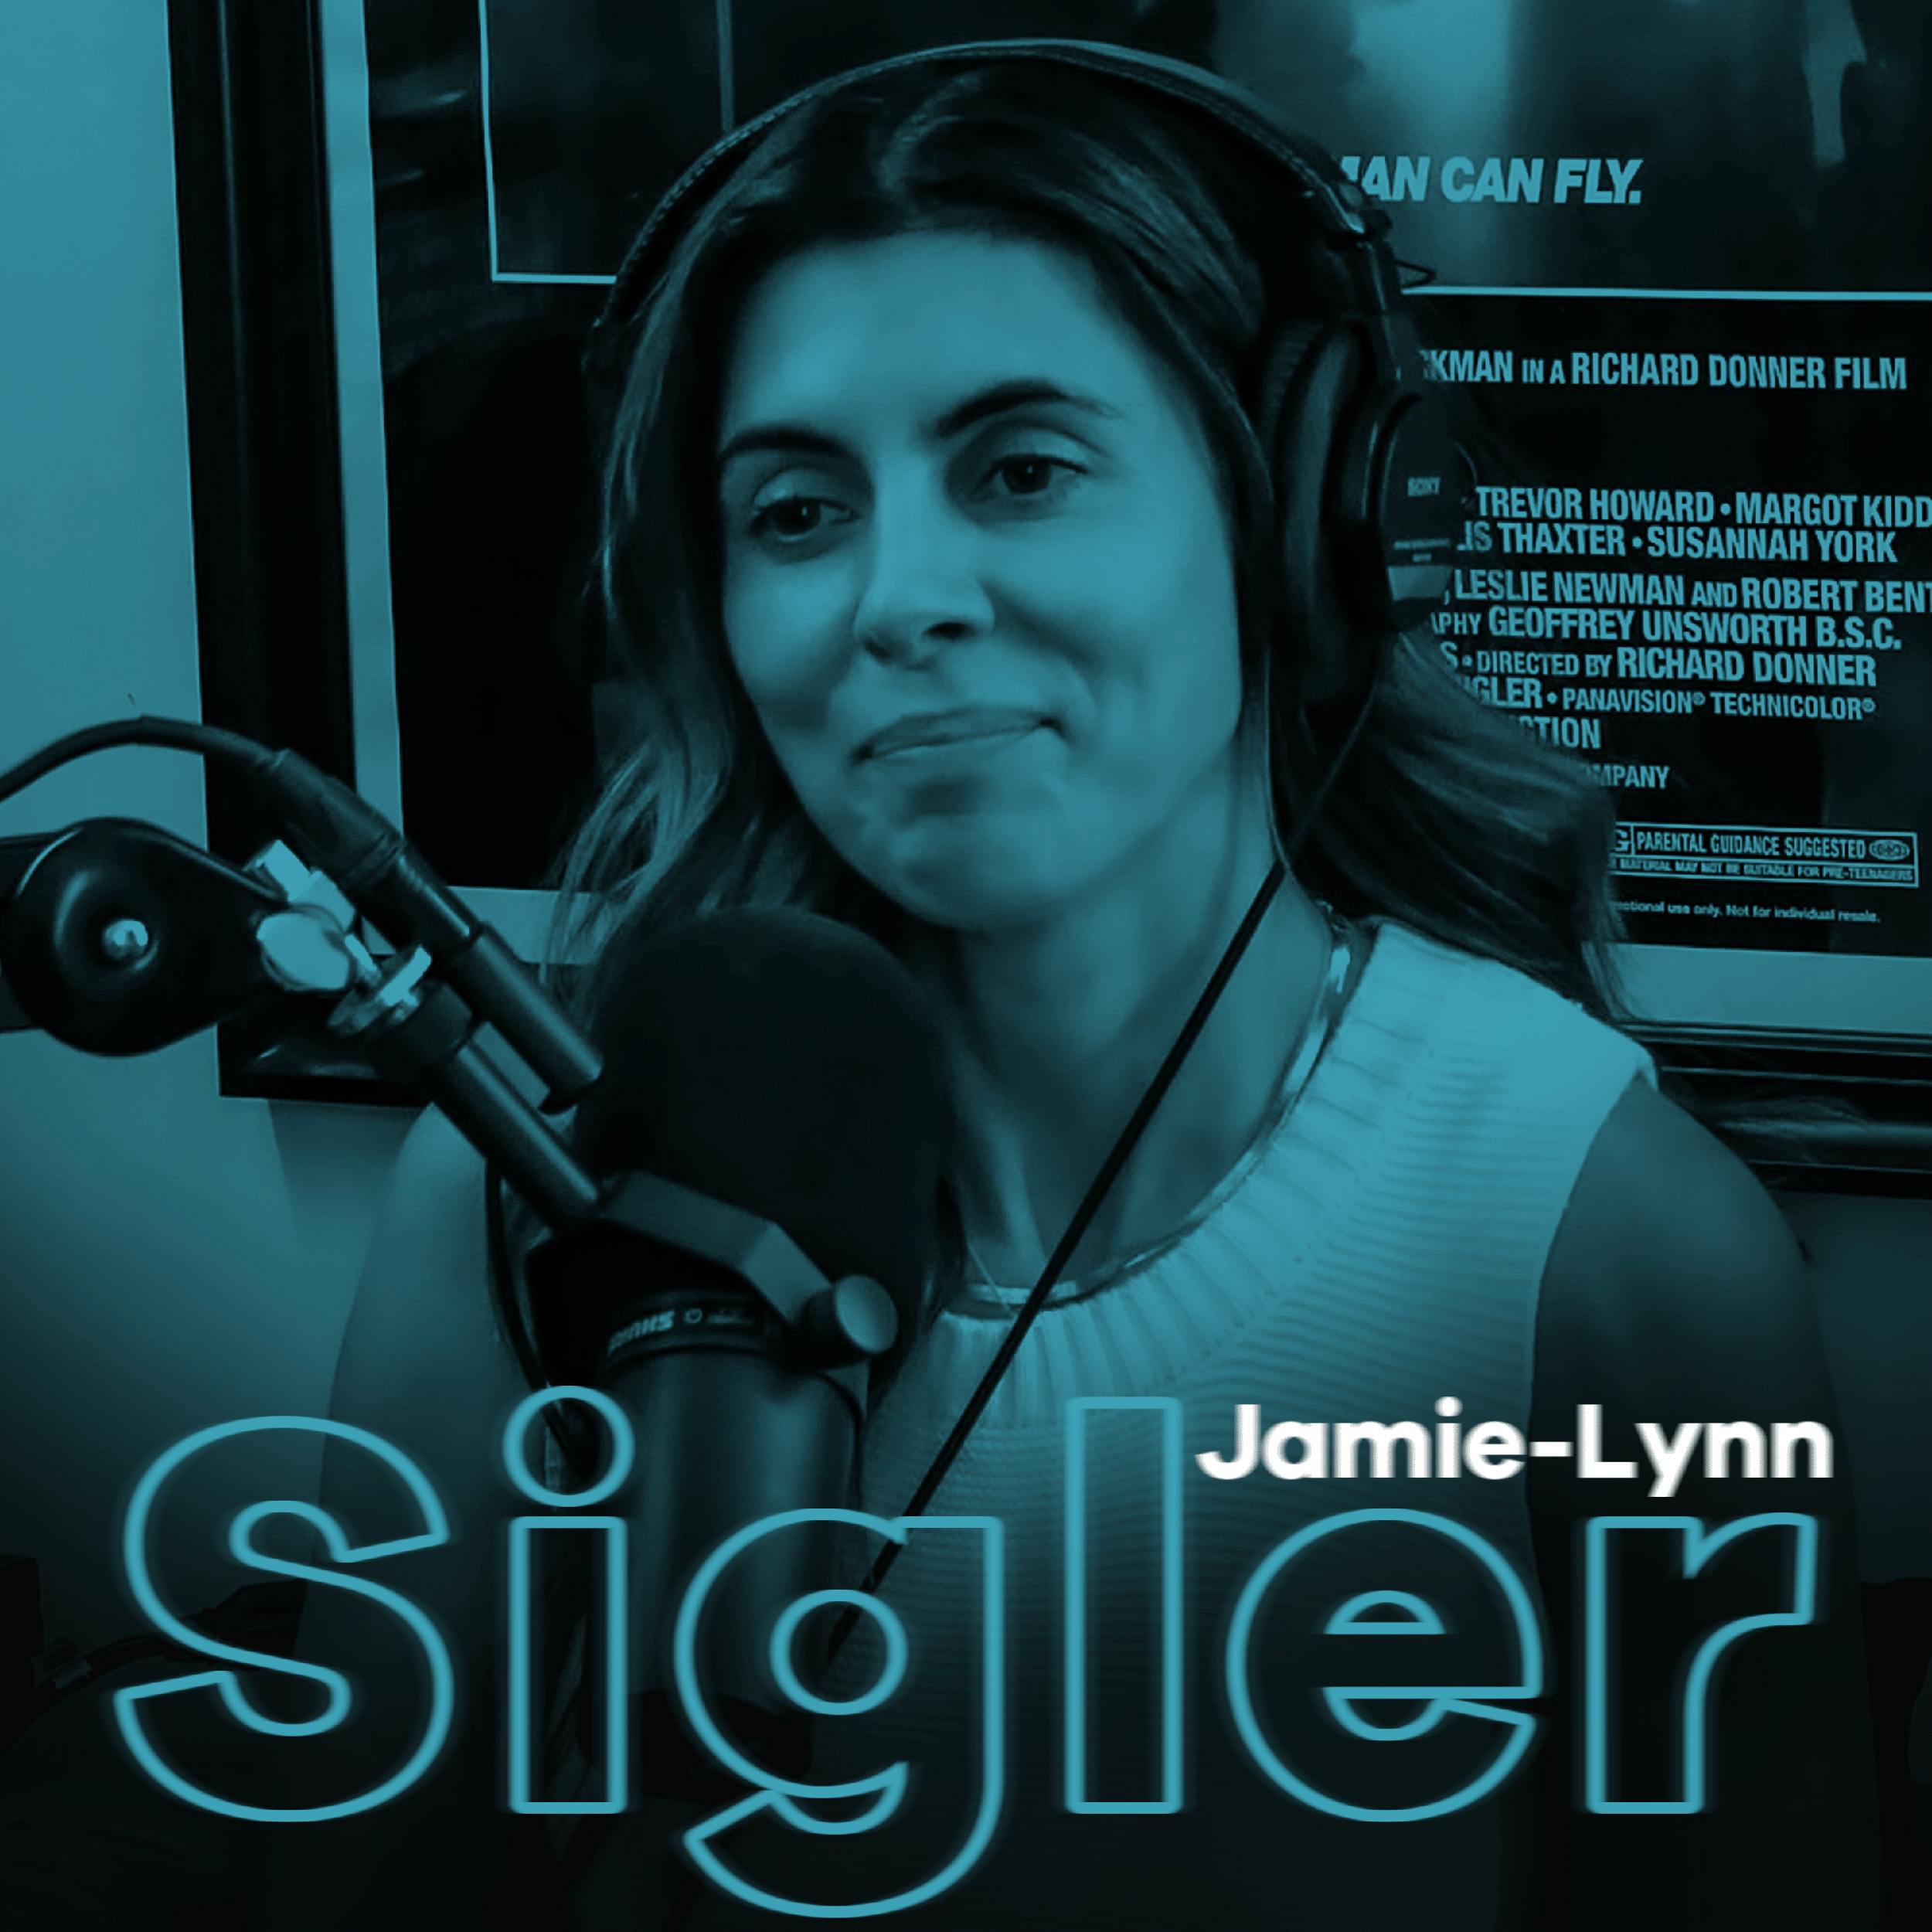 JAMIE-LYNN SIGLER: Necessary Mental Breakdowns, Joining YMH & Sopranos Memories